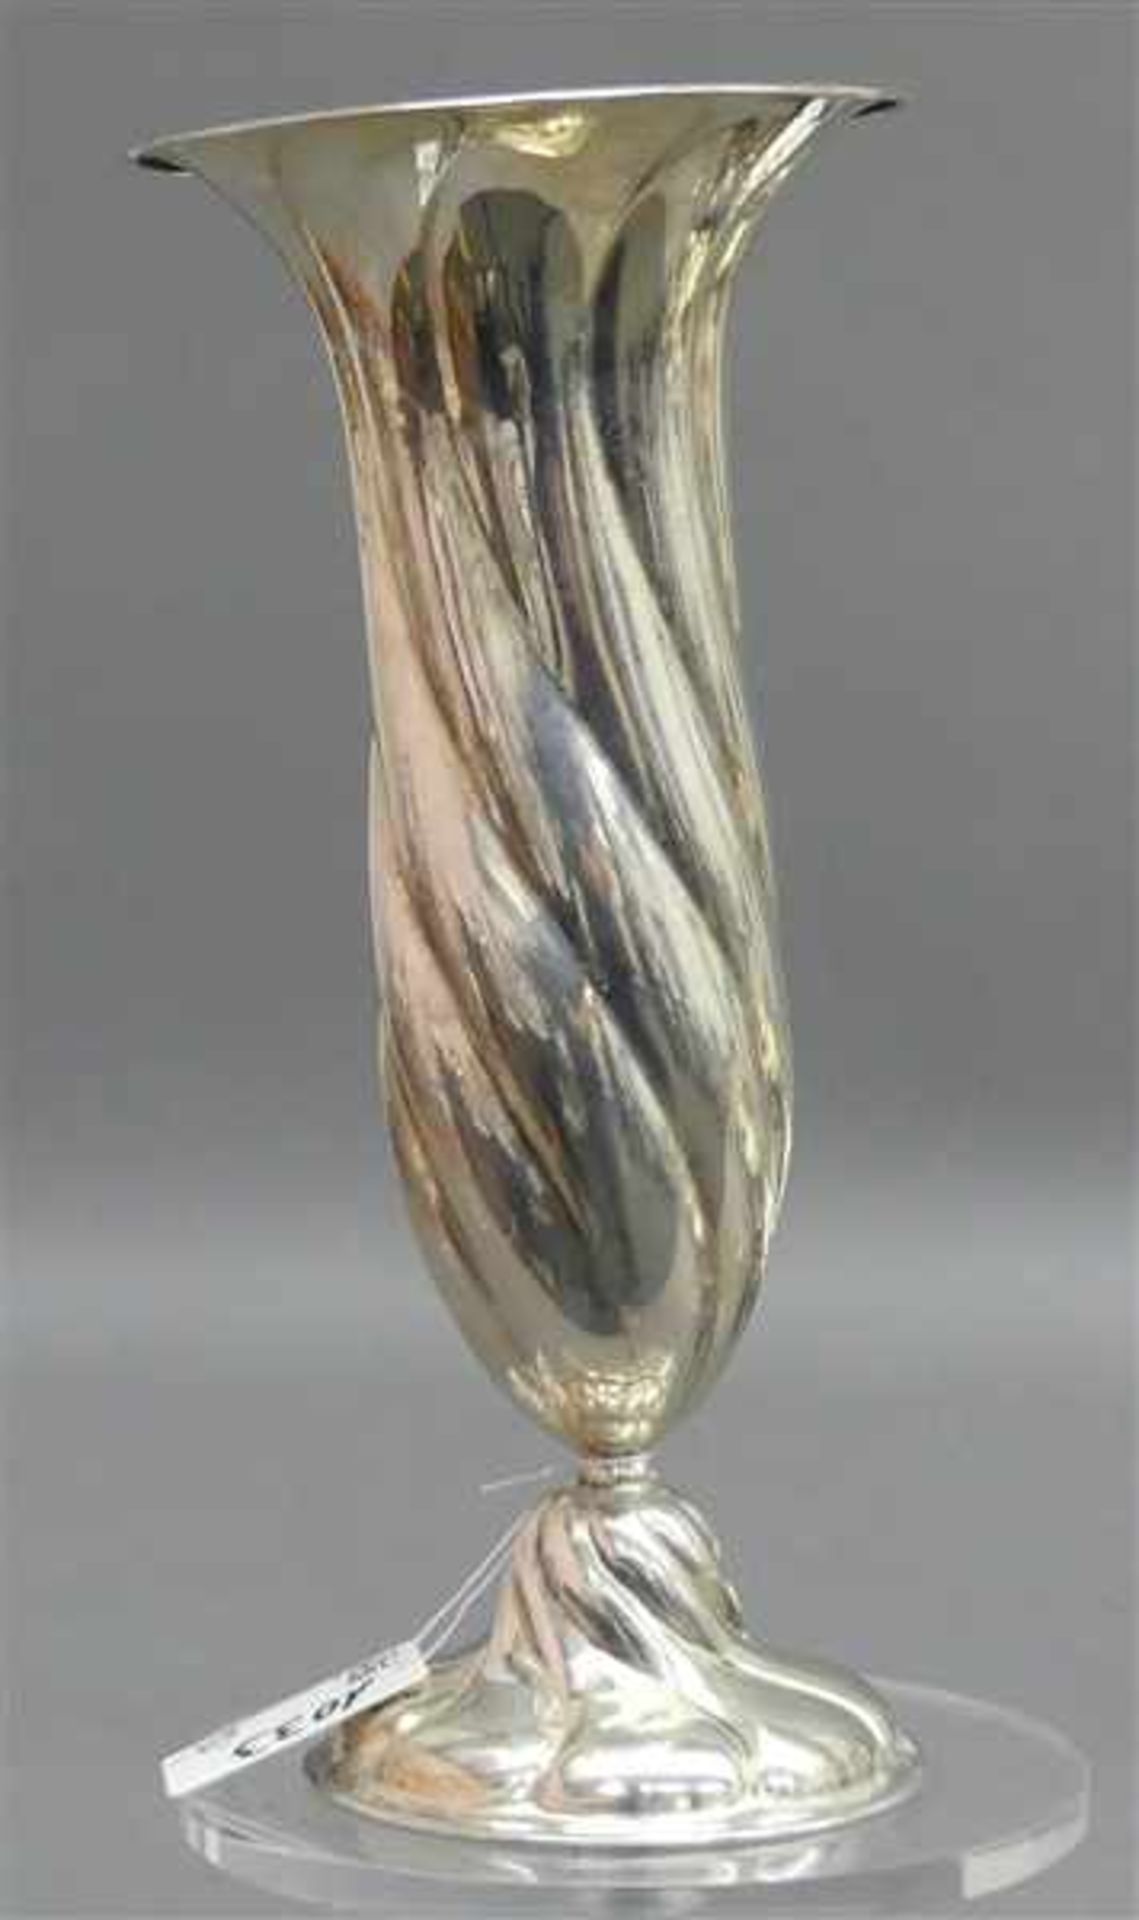 VaseSilber, gedrehte Form, Fuß gefüllt, brutto ca 180g, h 18 cm,- - -20.00 % buyer's premium on